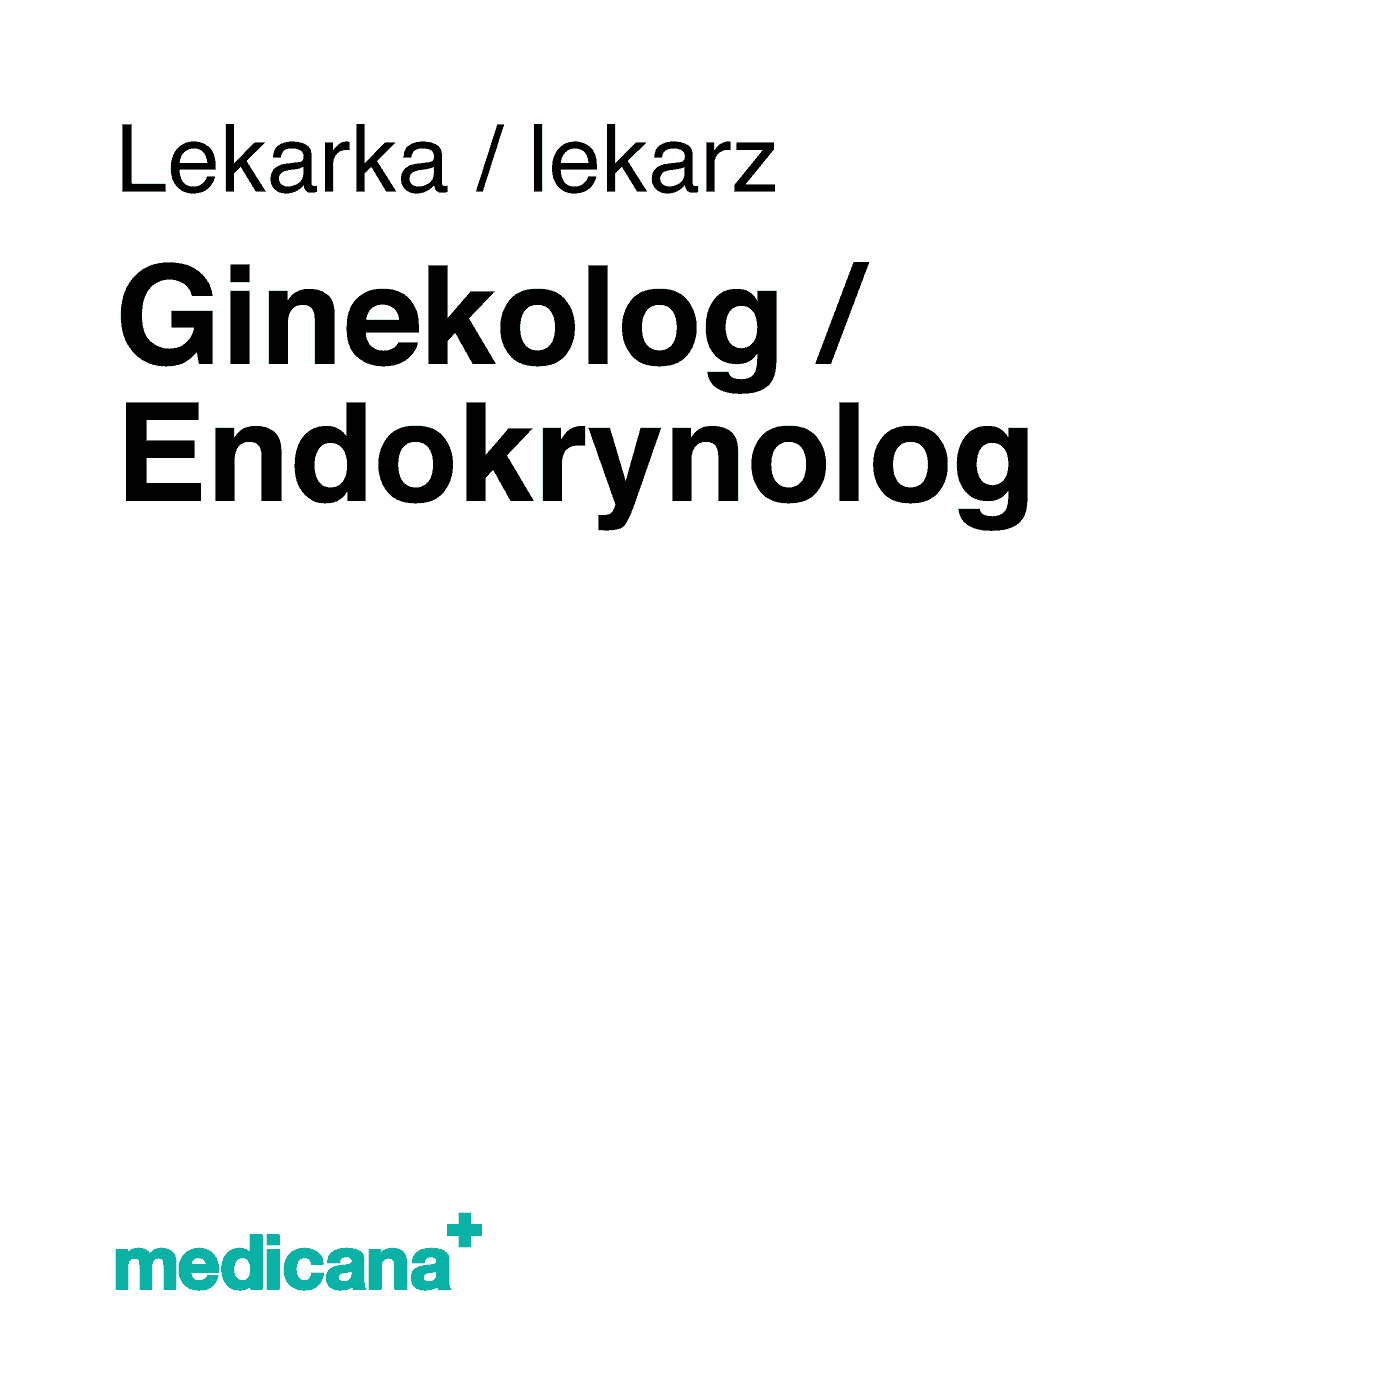 Ilustracja, białe tło i czarny napis w lewym górnym narożniku "Lekarka lekarz Ginekolog/ endokrynolog" i logo Medicana Centrum Terapii Medyczna Marihuana w lewym dolnym rogu.